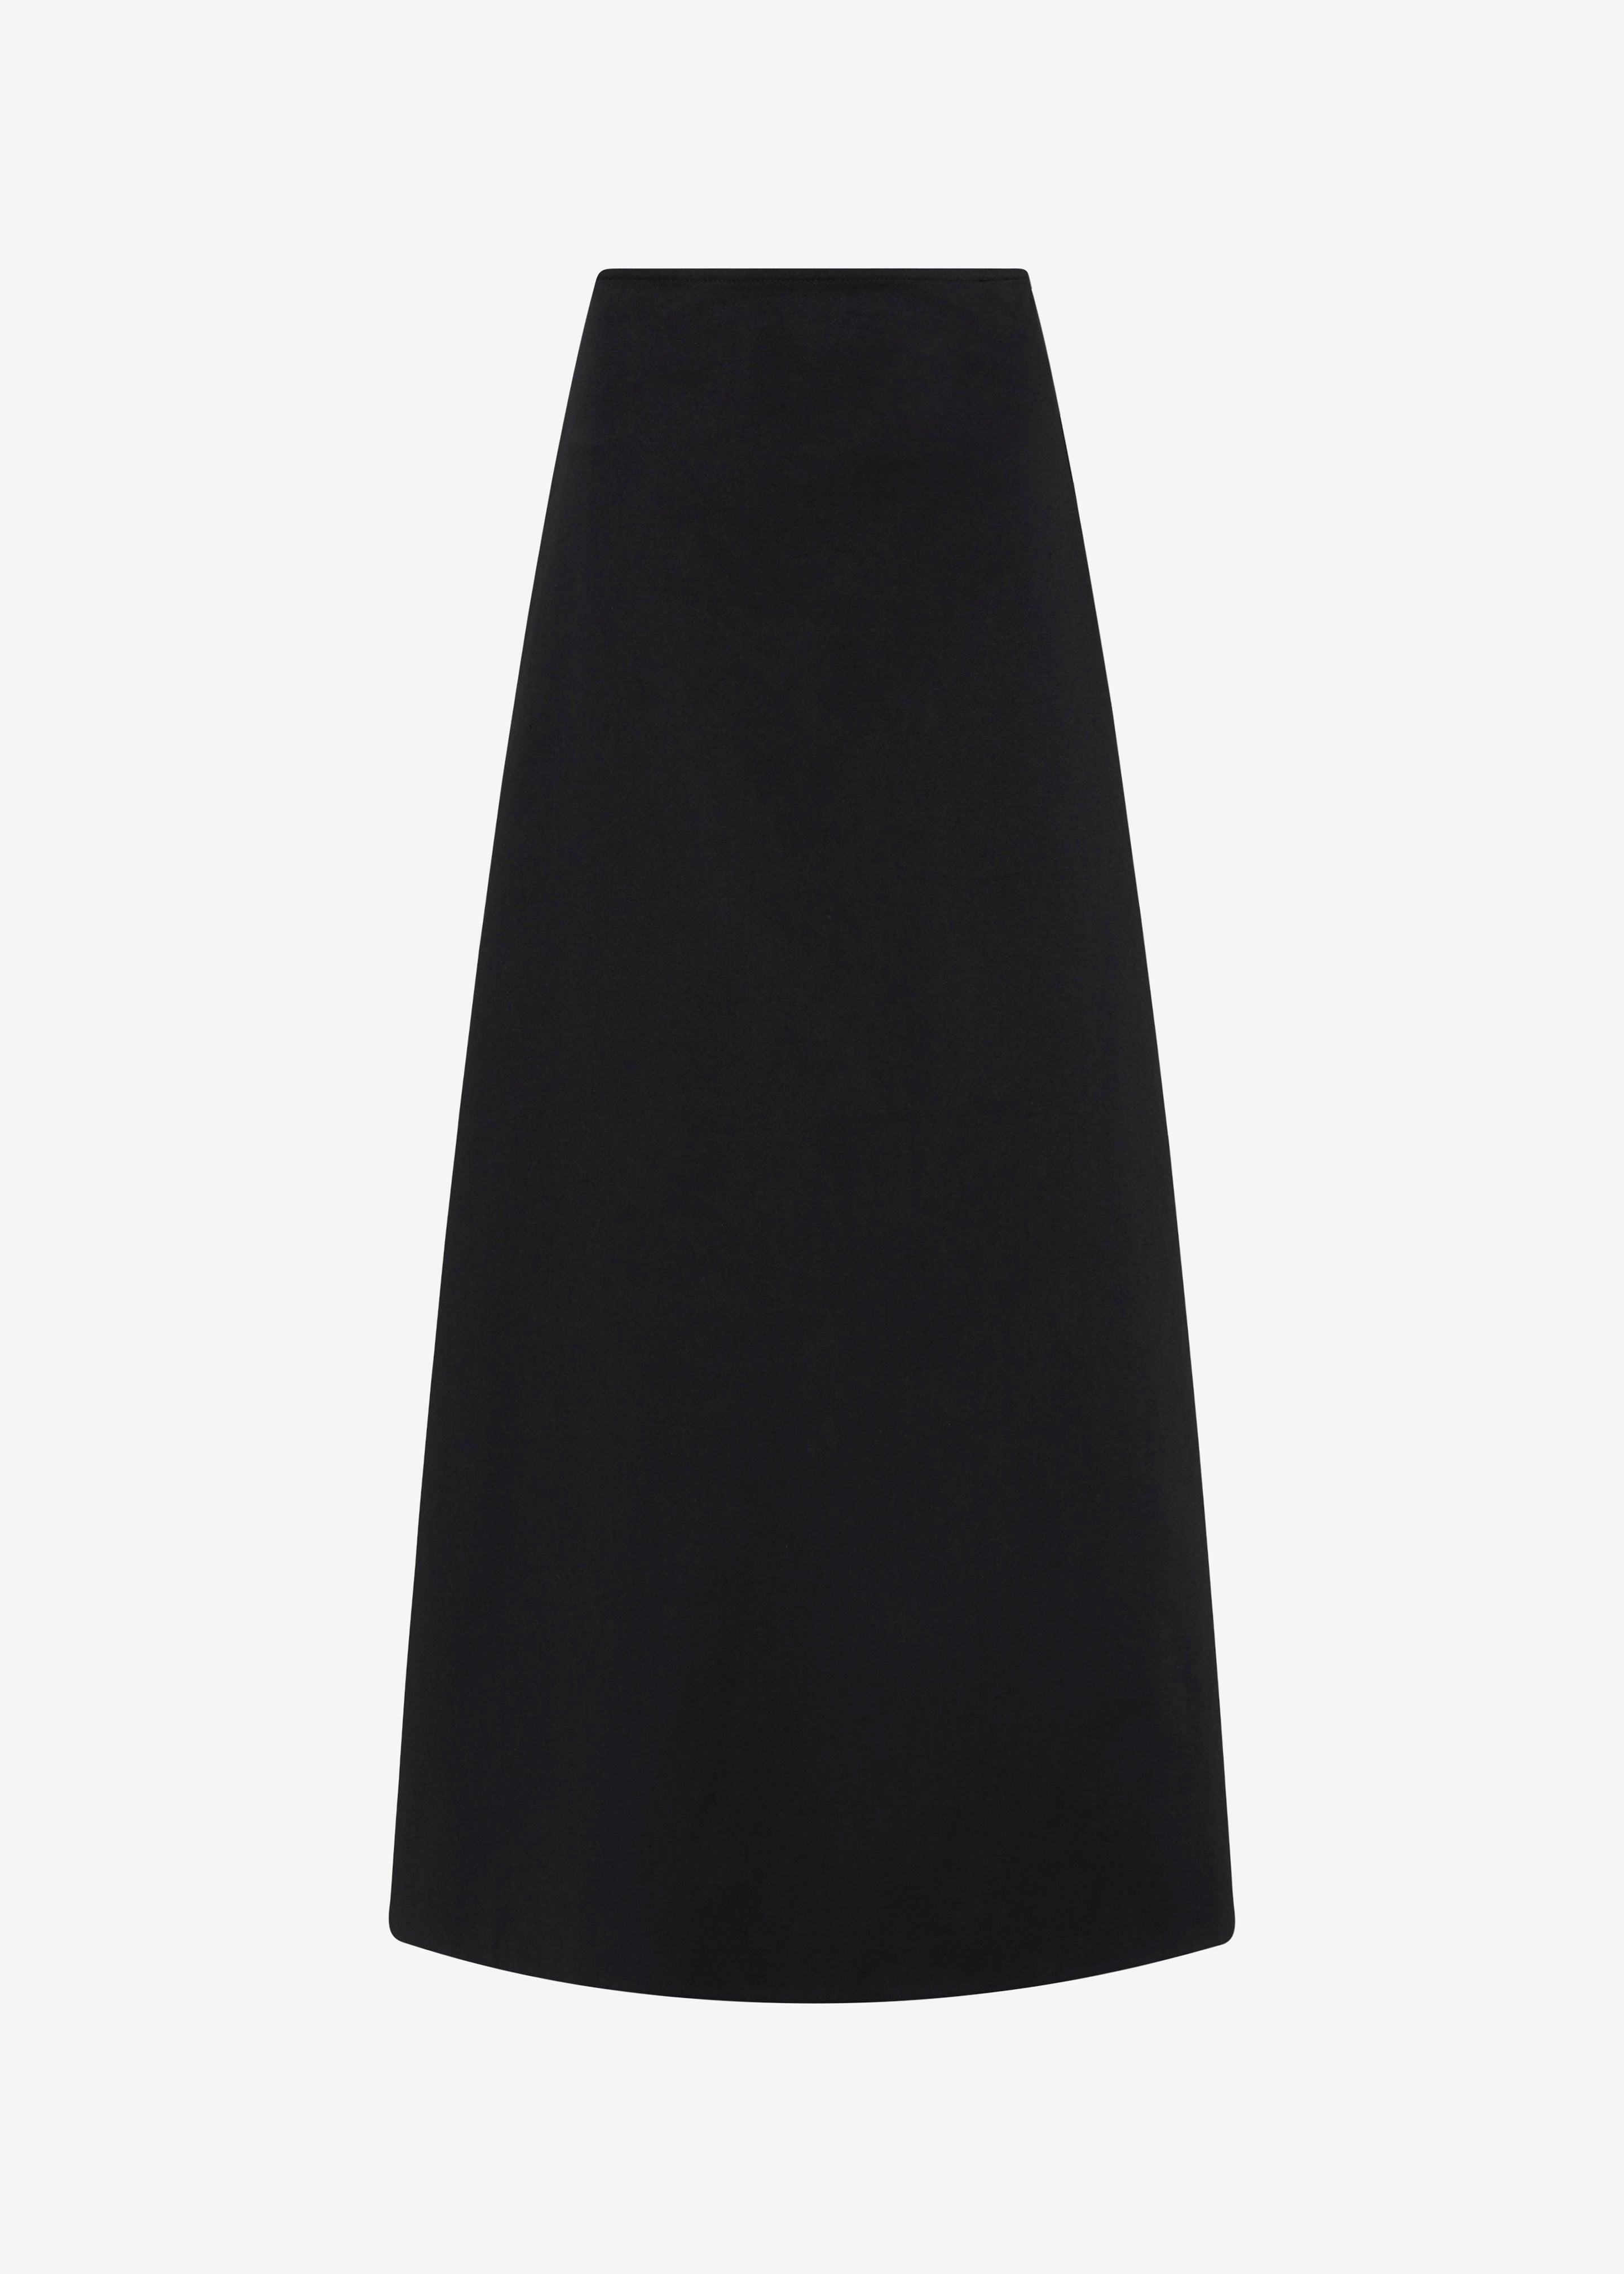 Matteau A-Line Skirt - Black - 6